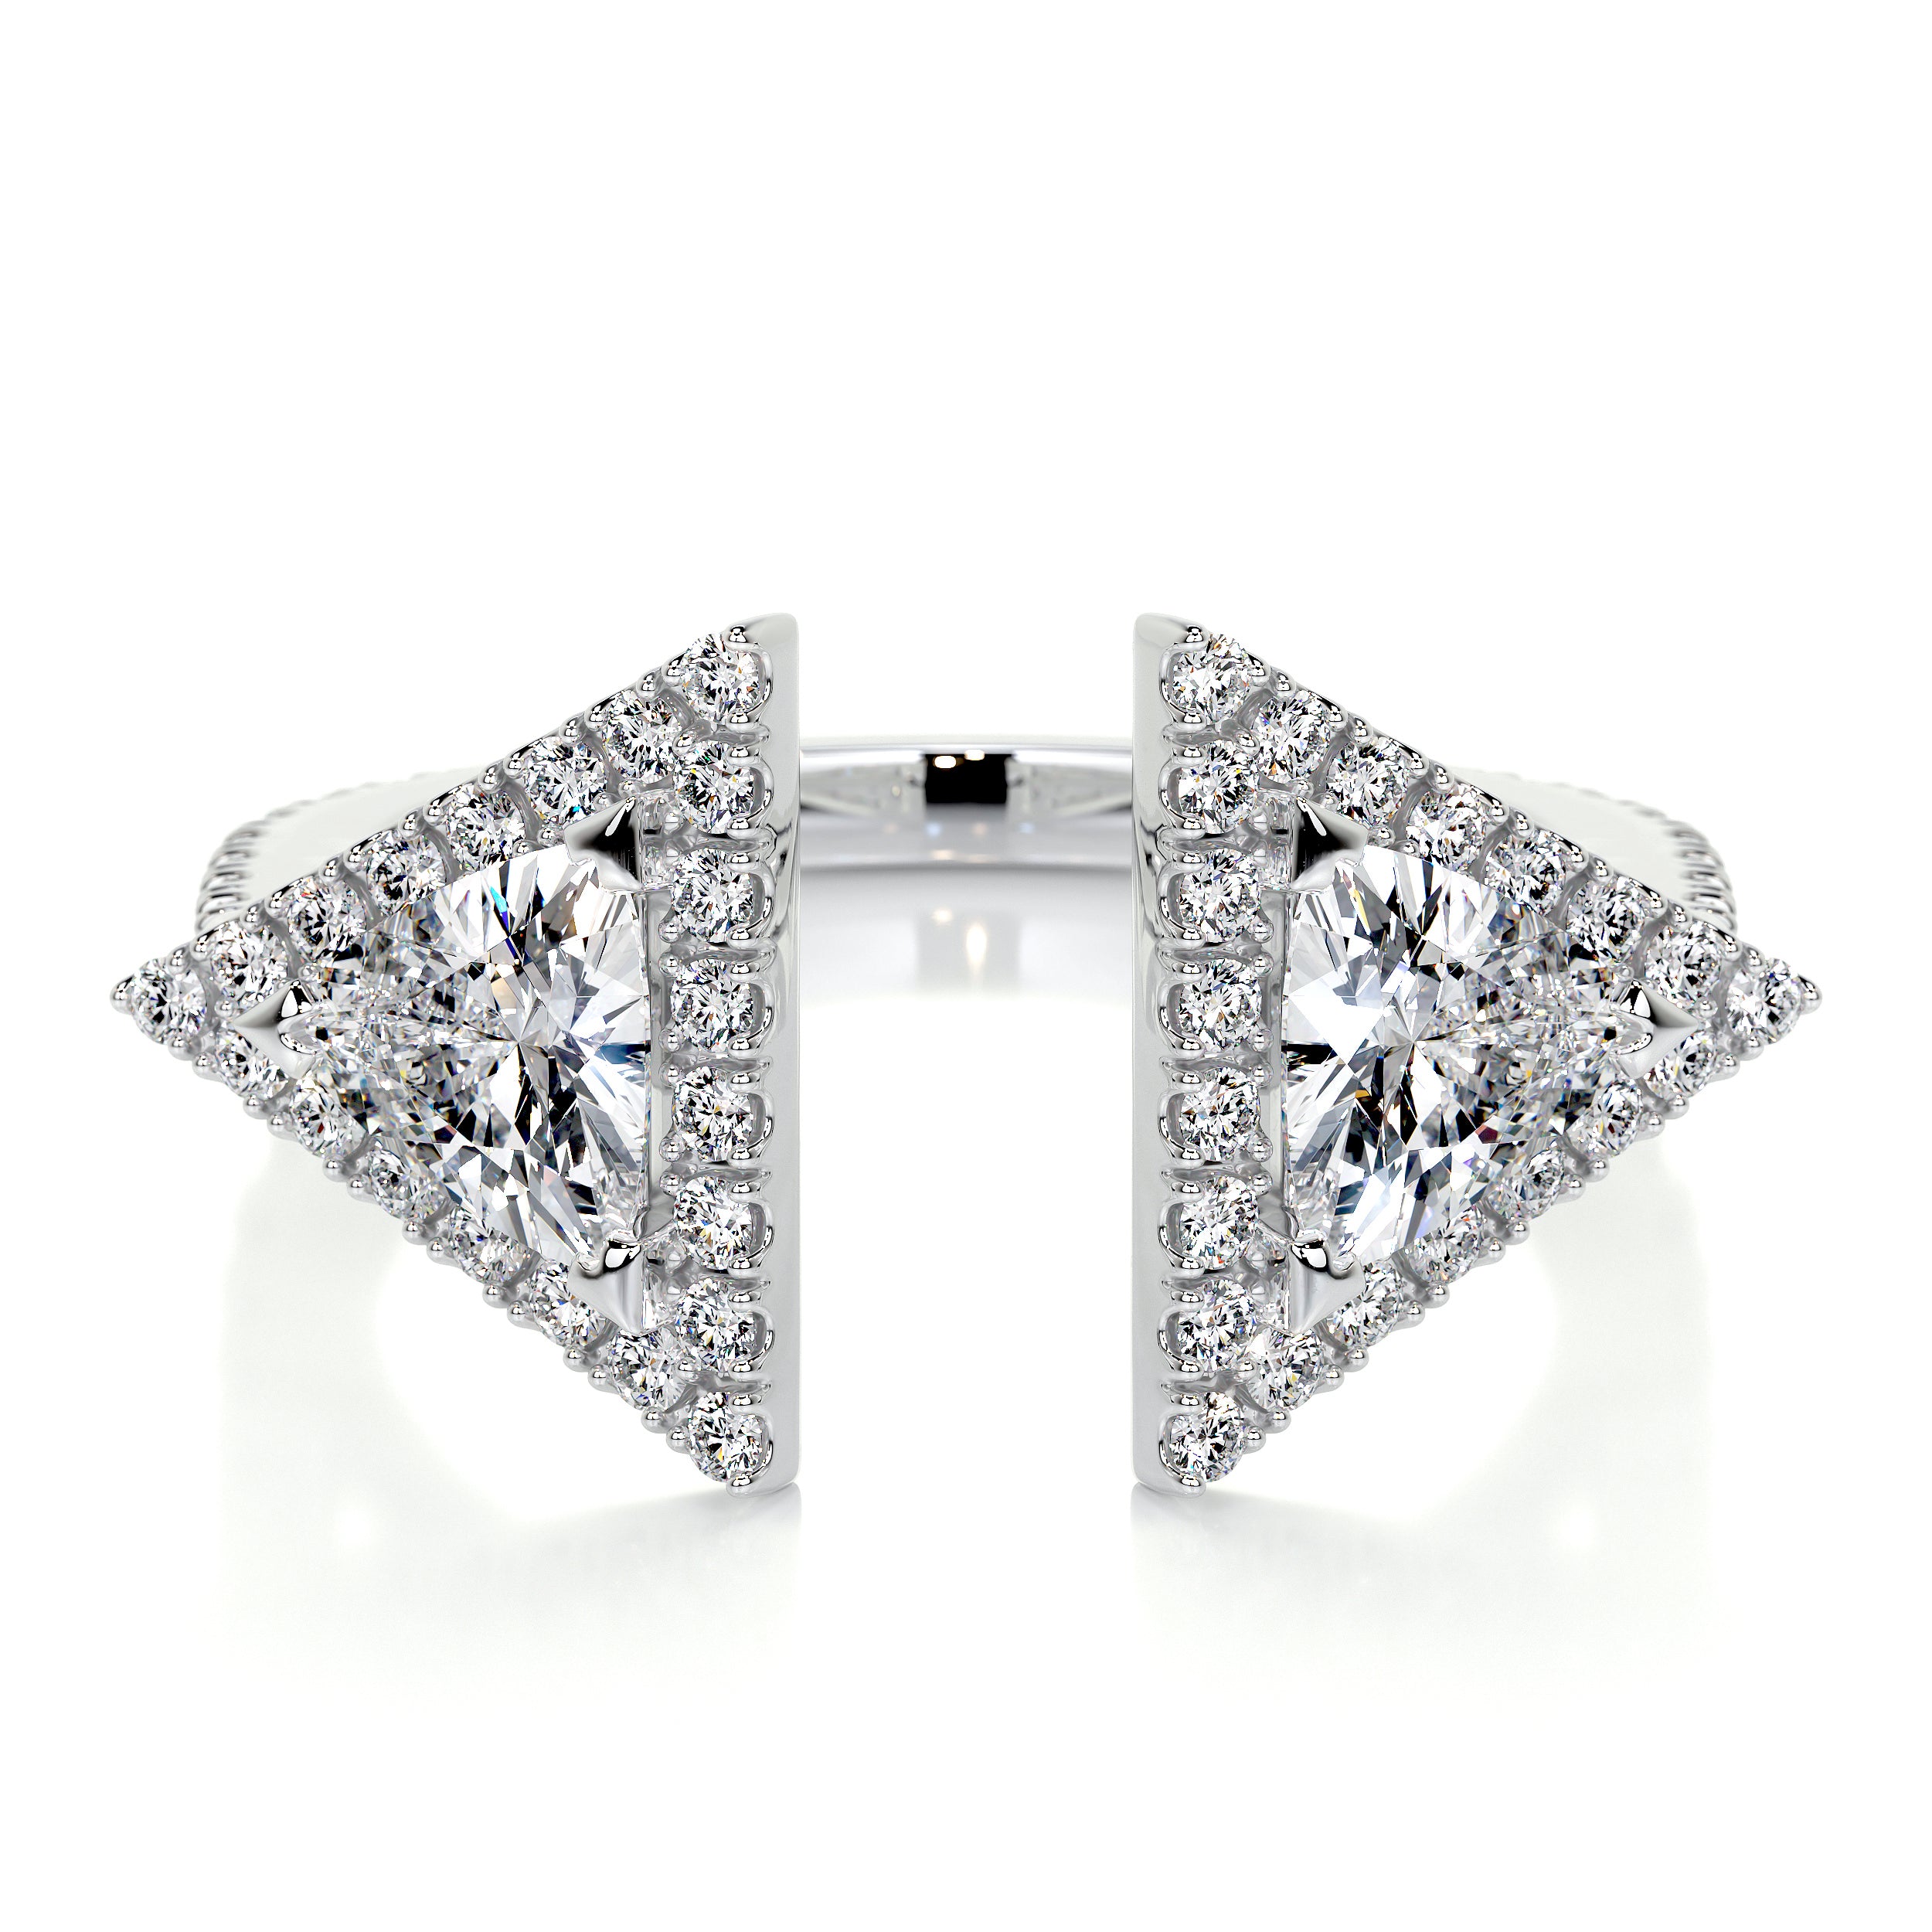 Olivia Lab Grown Diamond Wedding Ring   (1 carat) -18K White Gold